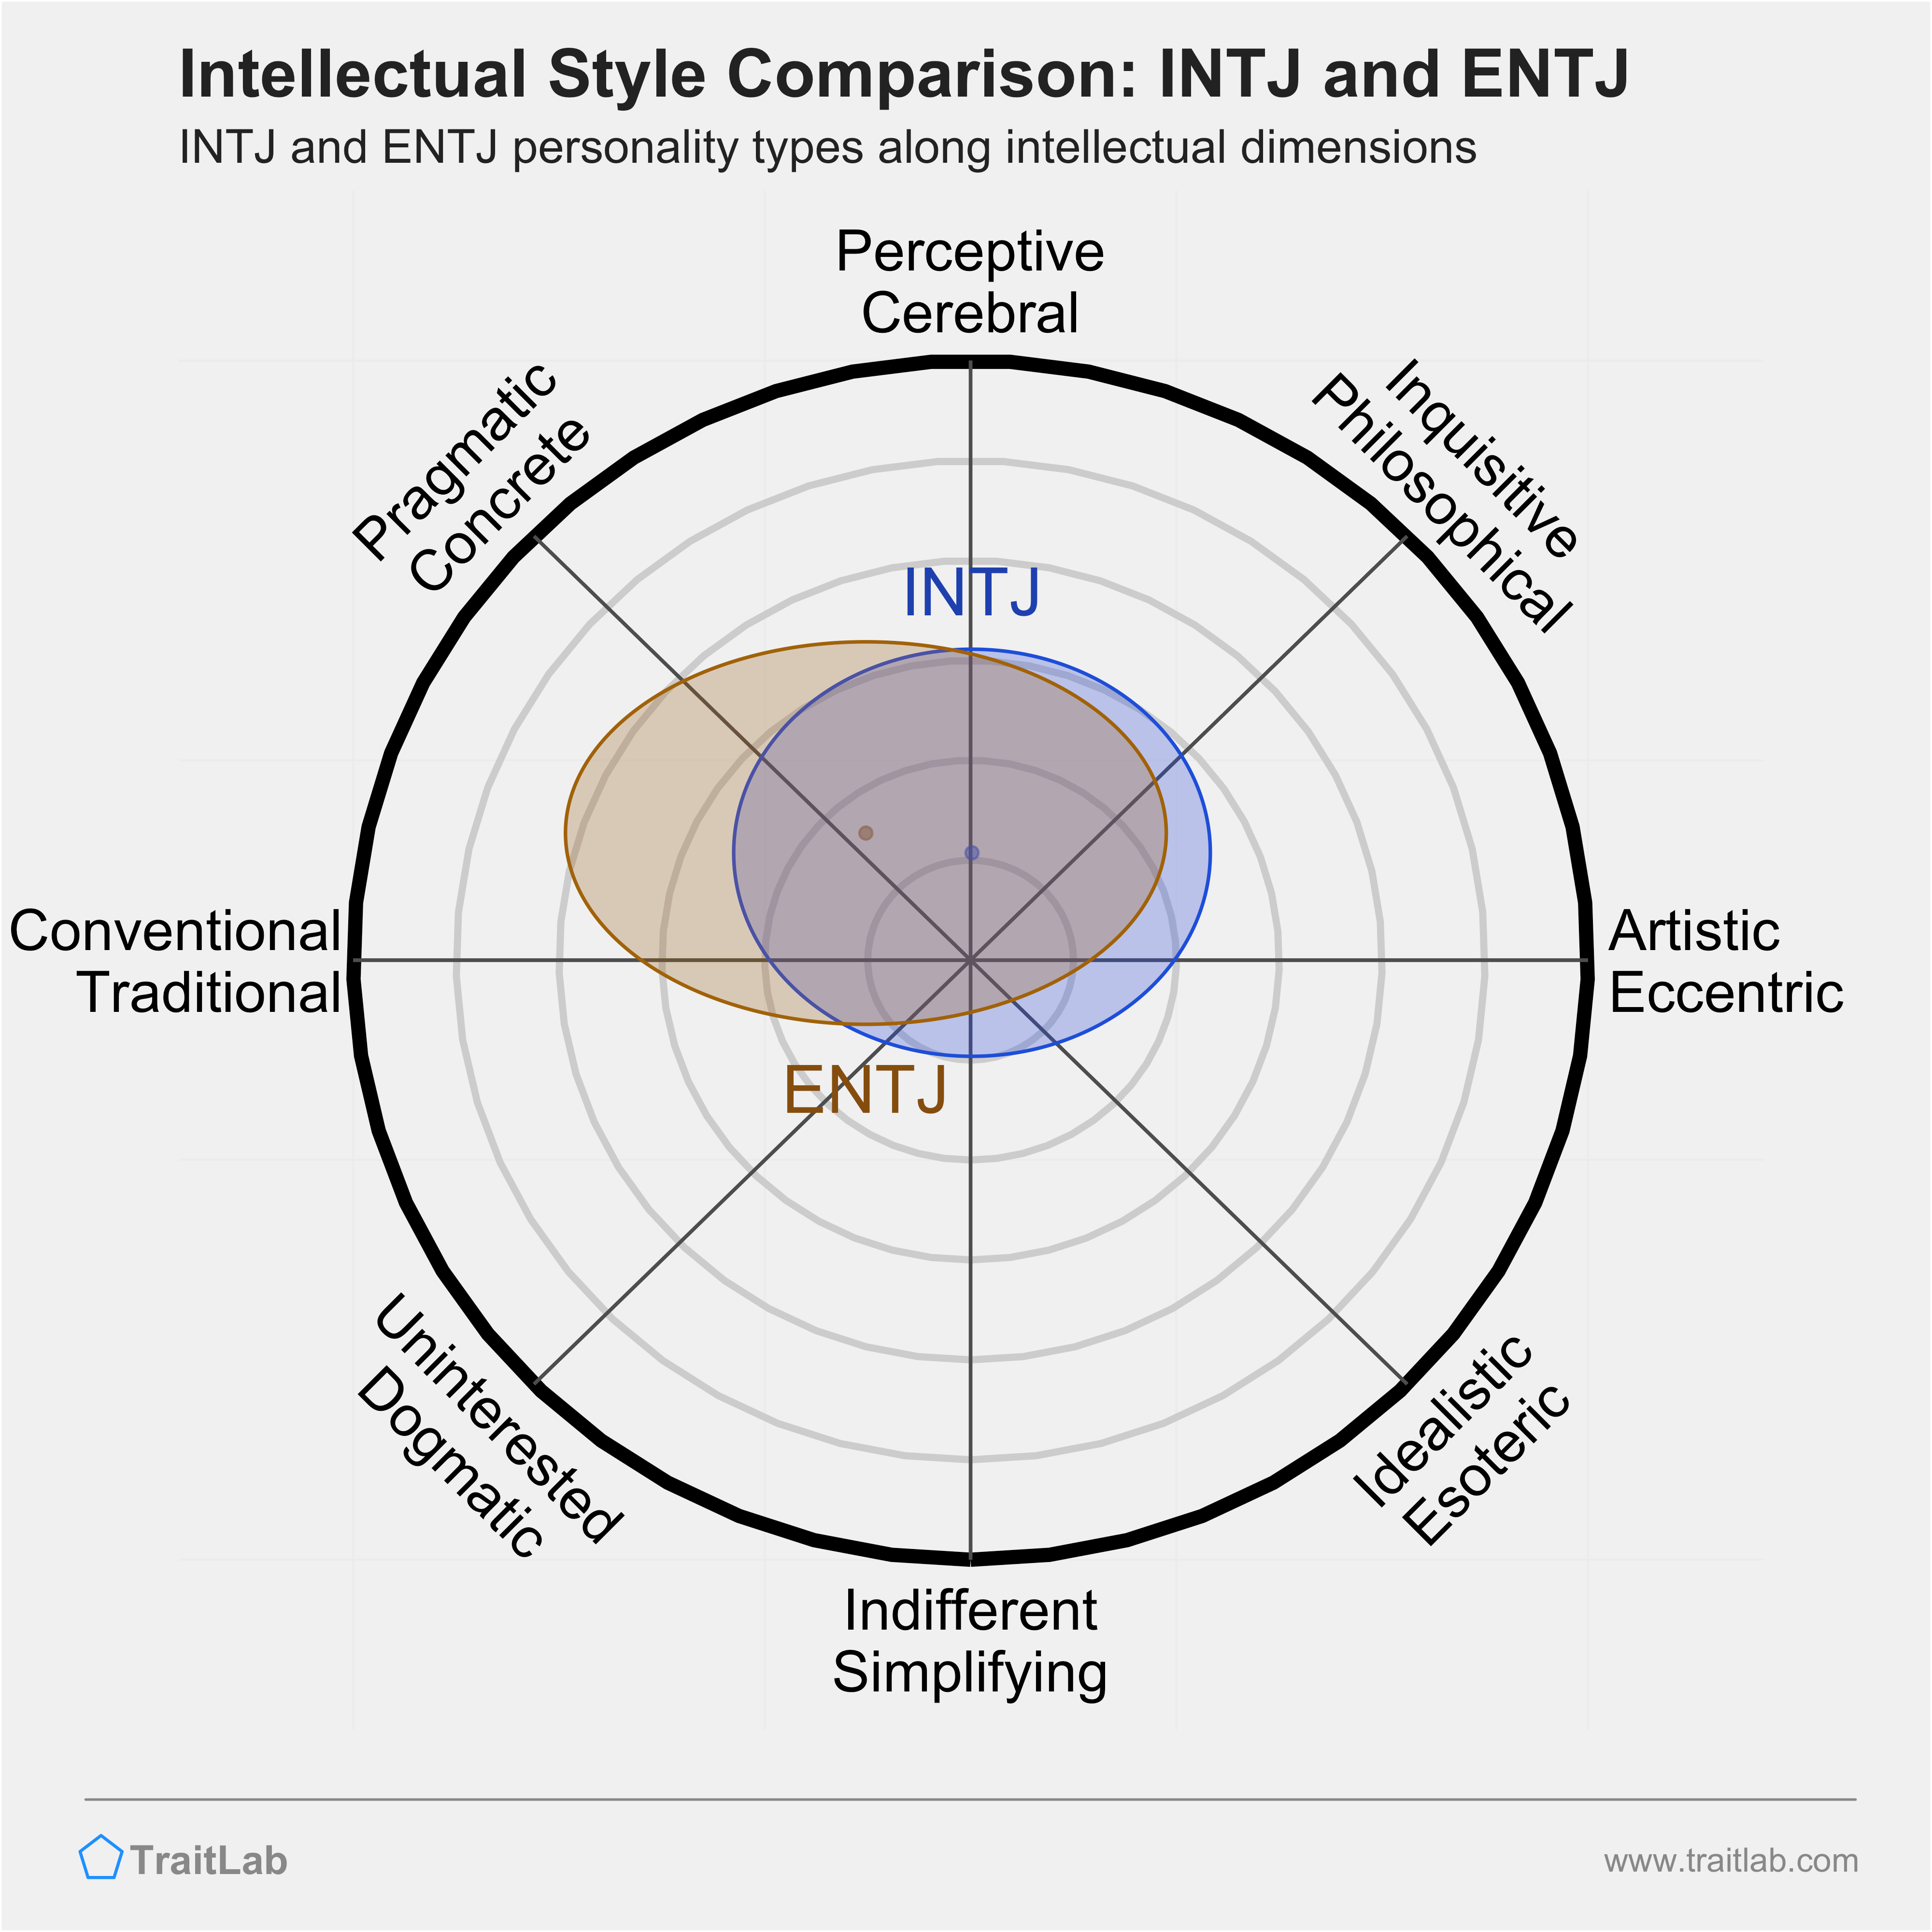 INTJ and ENTJ comparison across intellectual dimensions